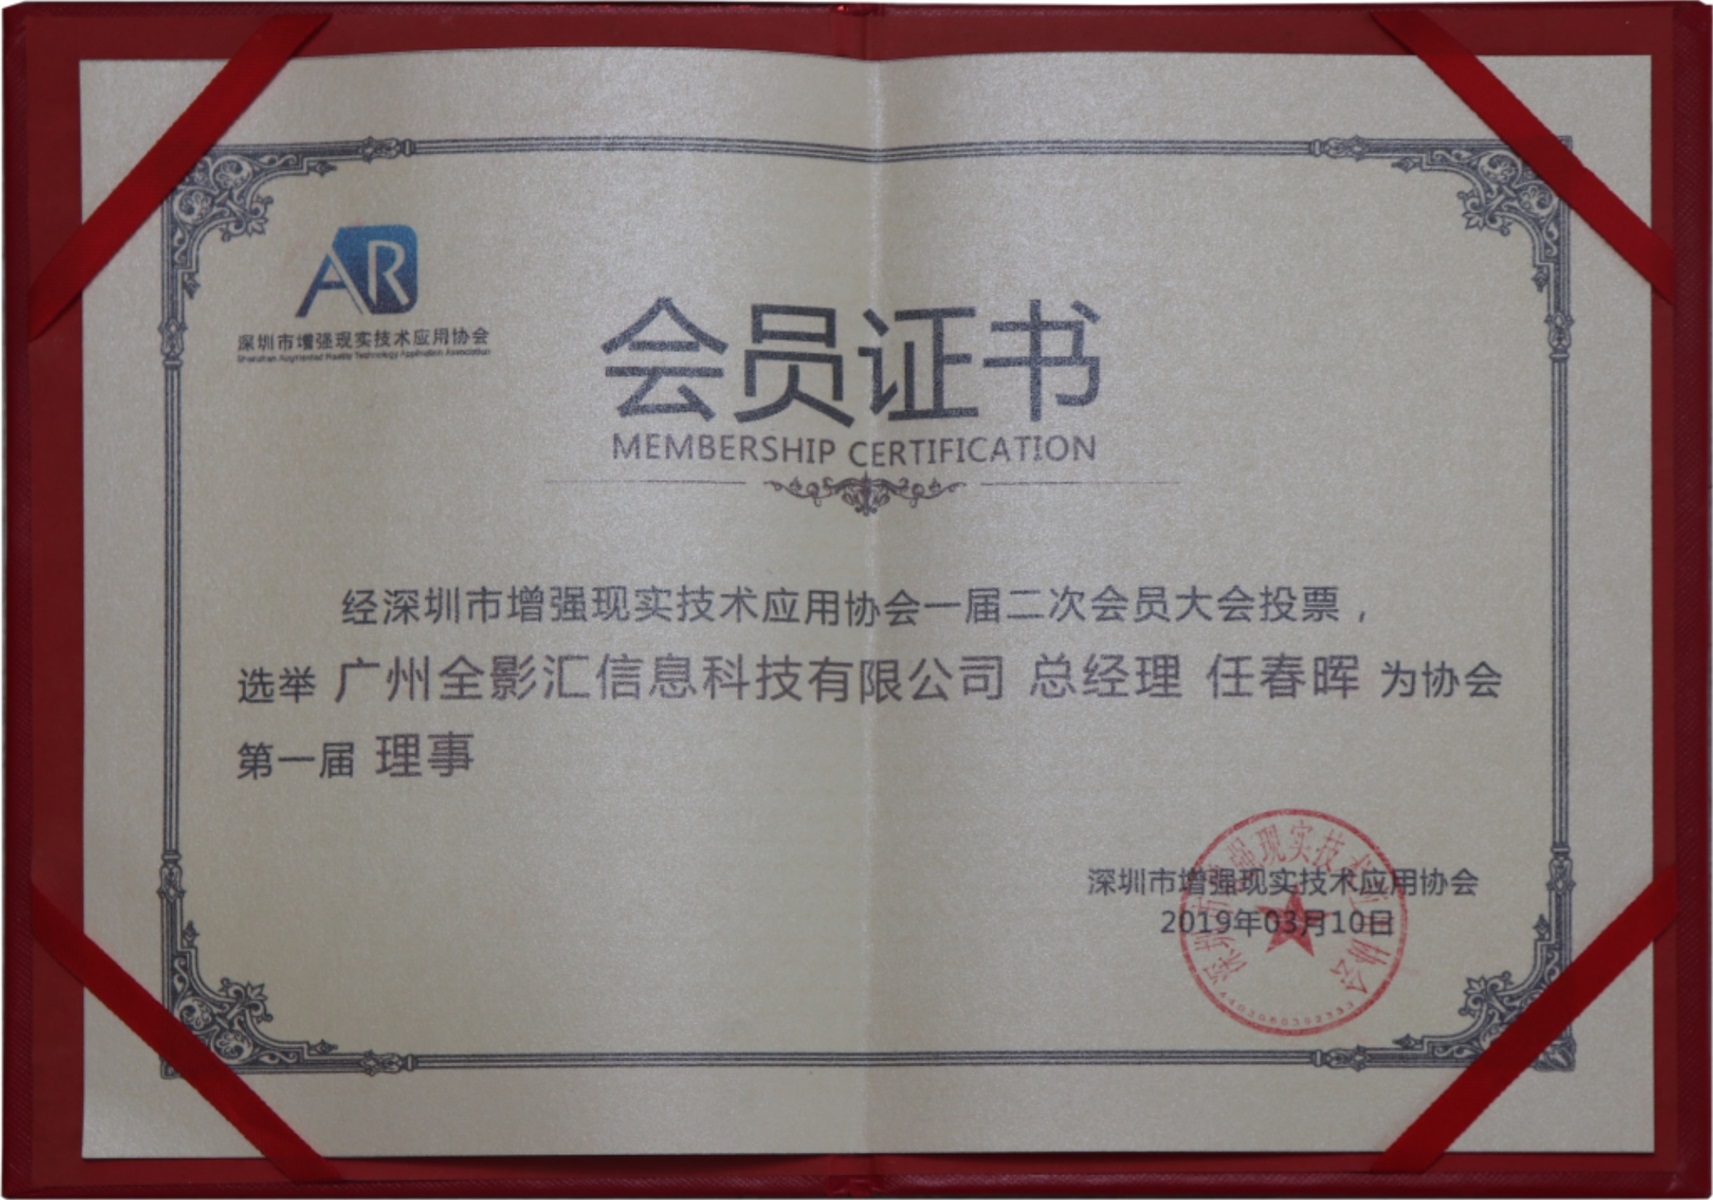 深圳市增强现实技术应用协会会员证书-2019年3月10日